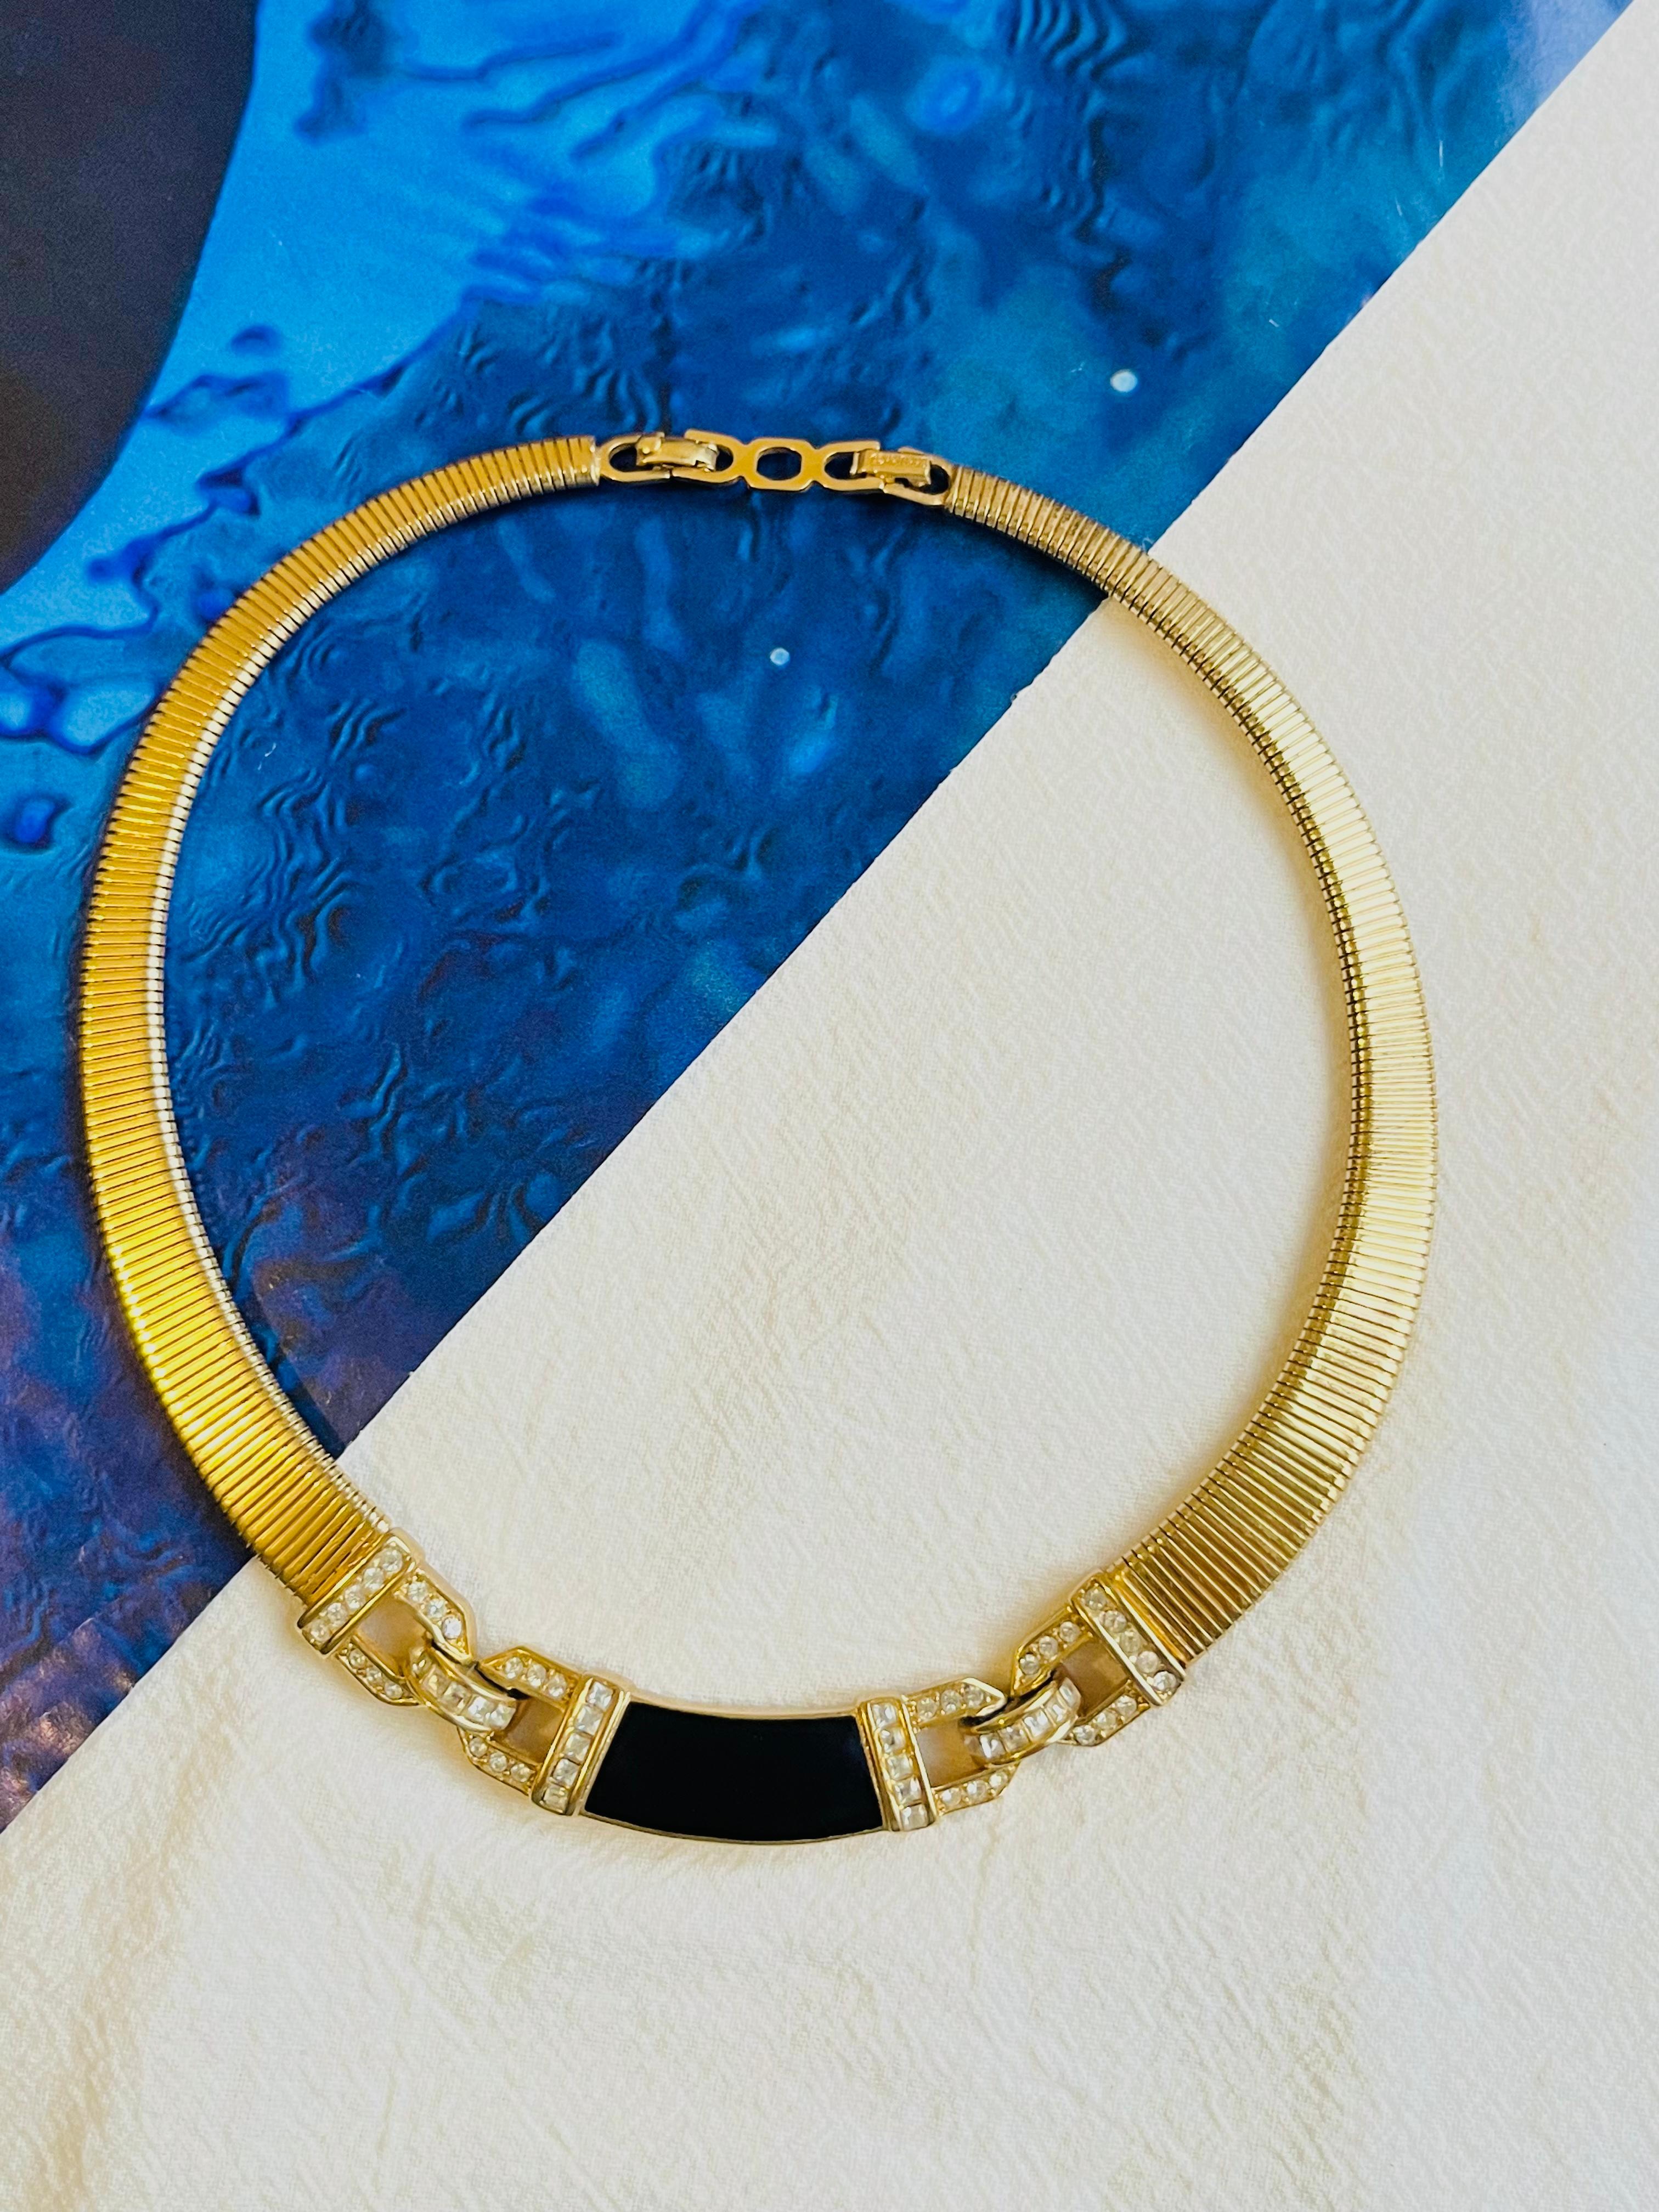 Christian Dior Vintage 1980s Black Enamel Crystals Interlocked Pendant Omega Ribbed Checklace, Gold Tone

Très bon état. 100% authentique. 

Une pièce unique. Signé au dos. 

Taille : 30 cm. Extension de la chaîne : 2 cm. Pendentif : 8+2=8].

Poids